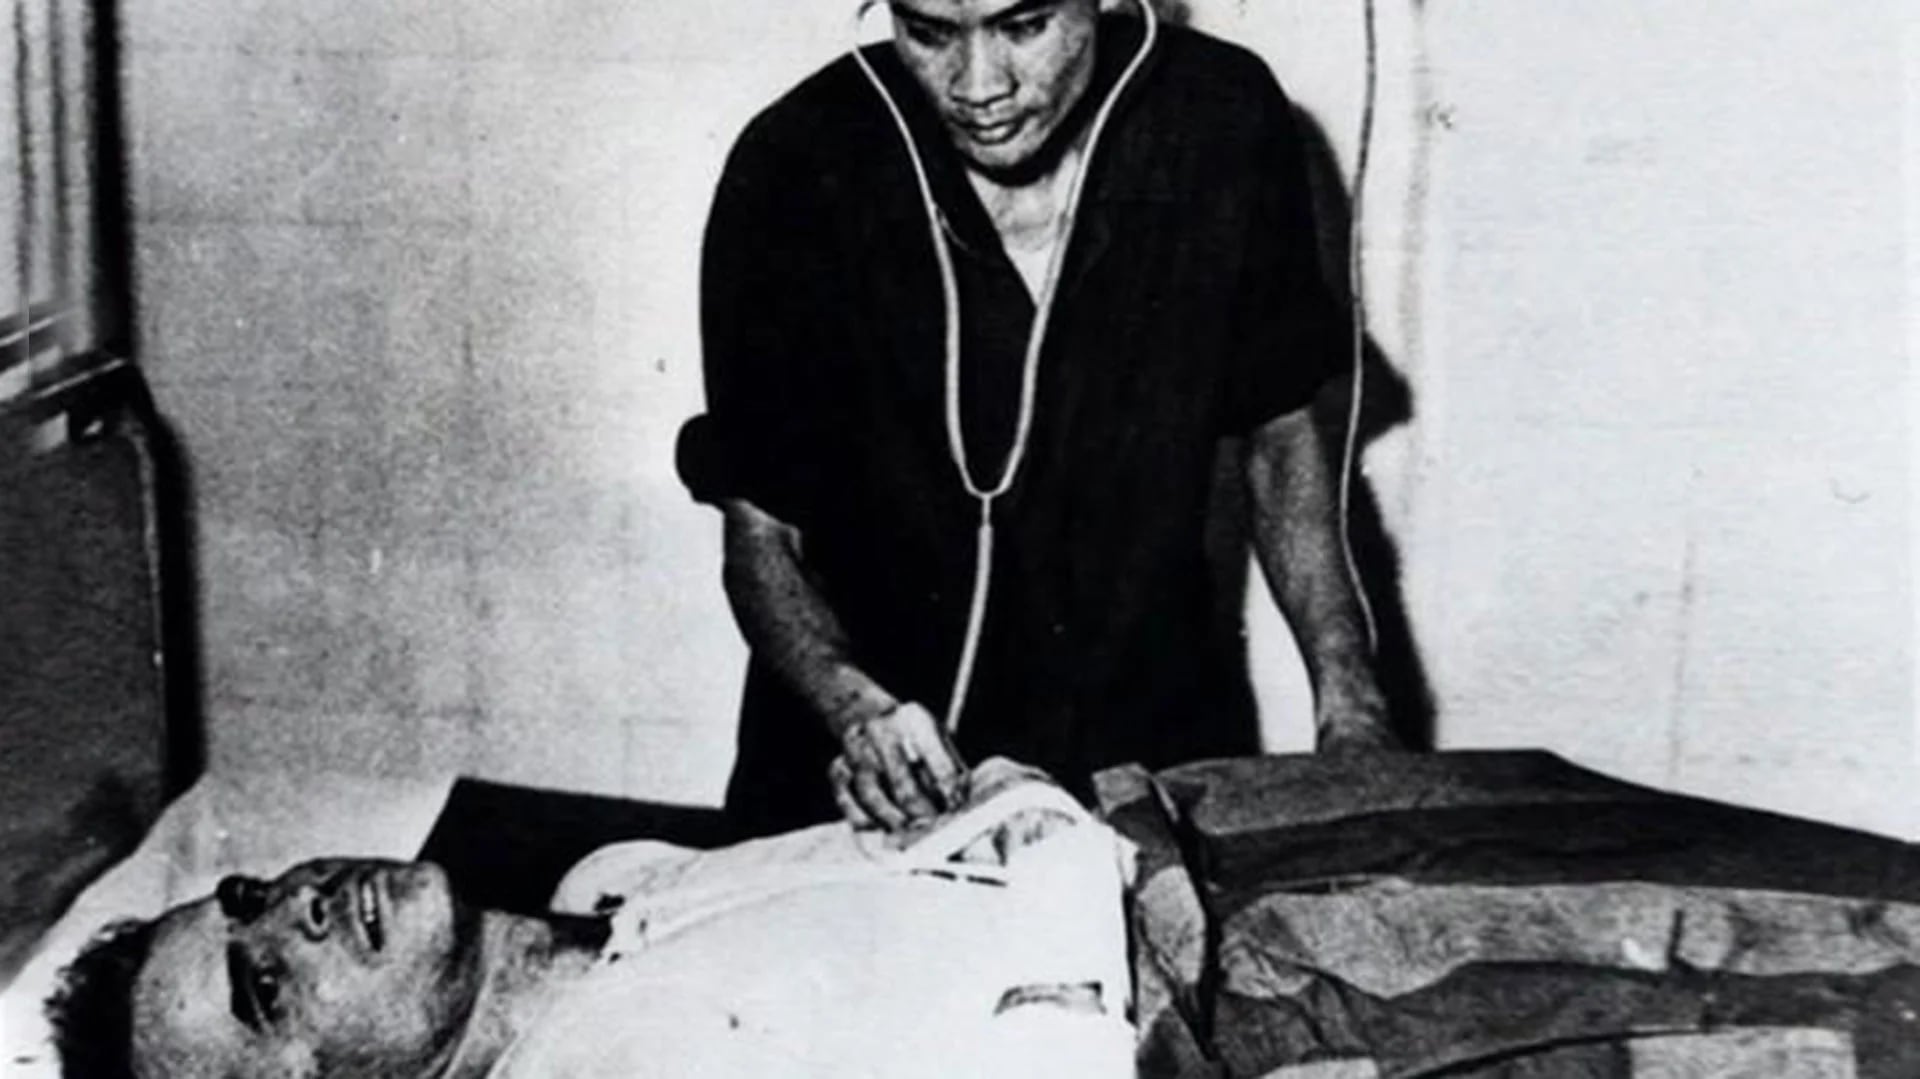 John McCain es atendido en un hospital en Hanoi como prisionero de guerra en 1967. Sería liberado en 1973. Para Trump no mereció ser llamado “héroe de guerra” porque fue capturado (AP)